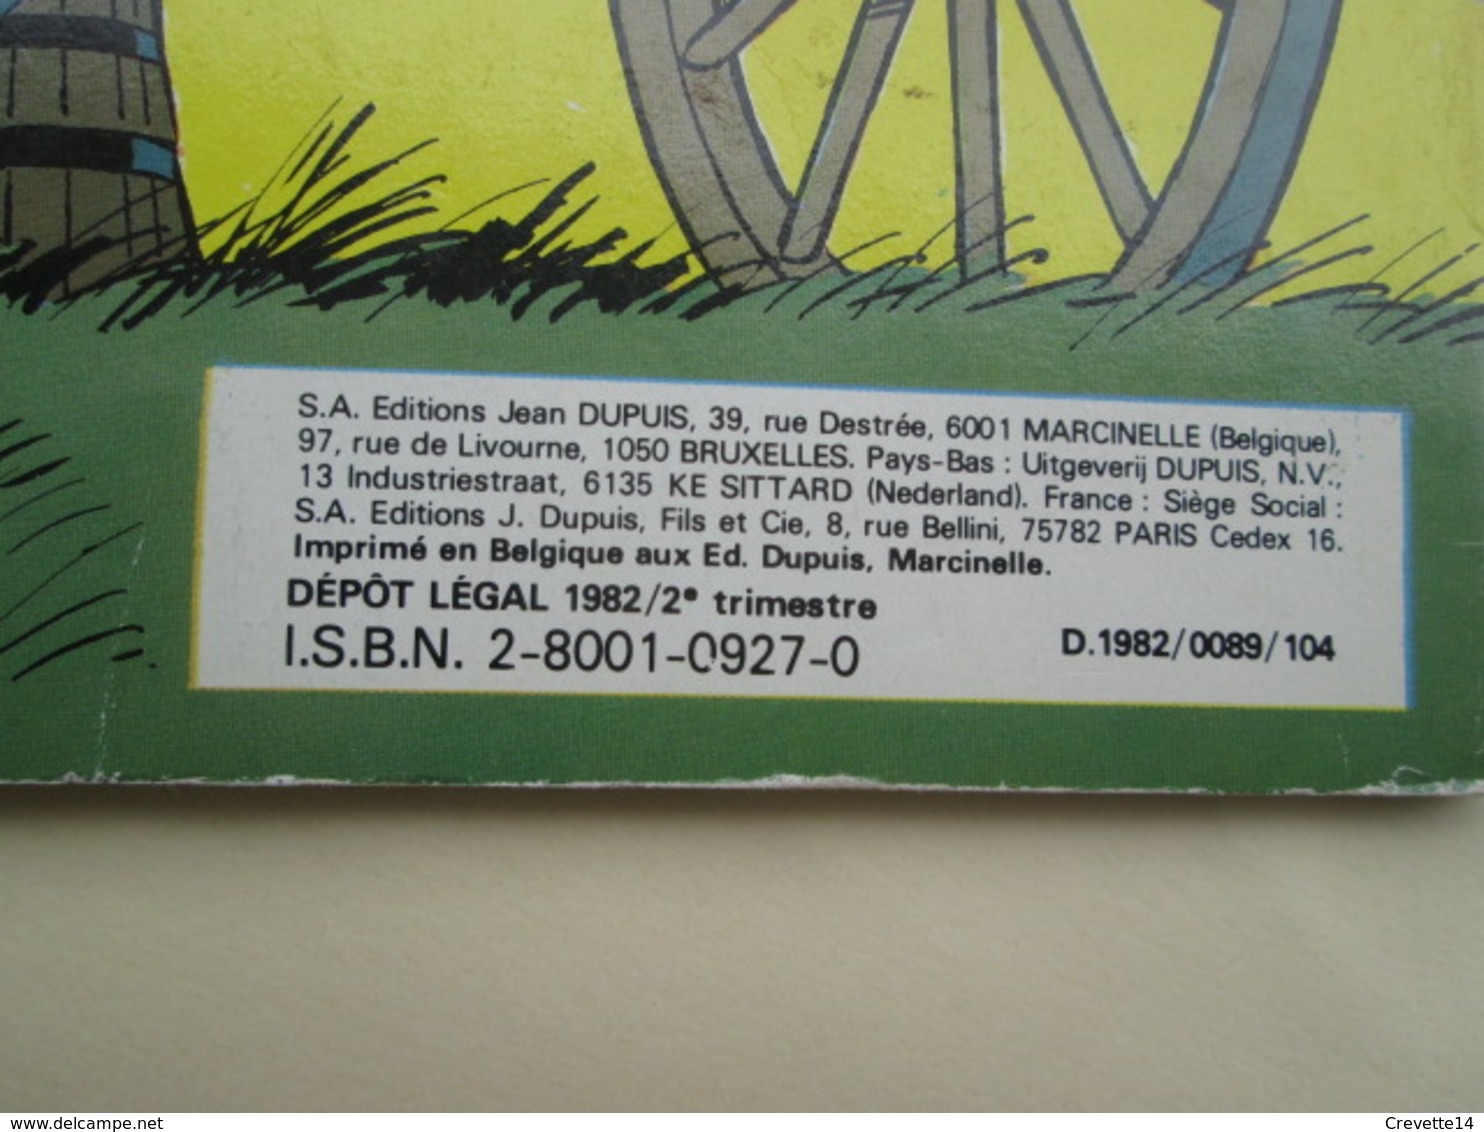 BD1219 Album souple broché DUPUIS LES TUNIQUES BLEUES / LE DAVID Edition Originale de 1982 coté 15 €